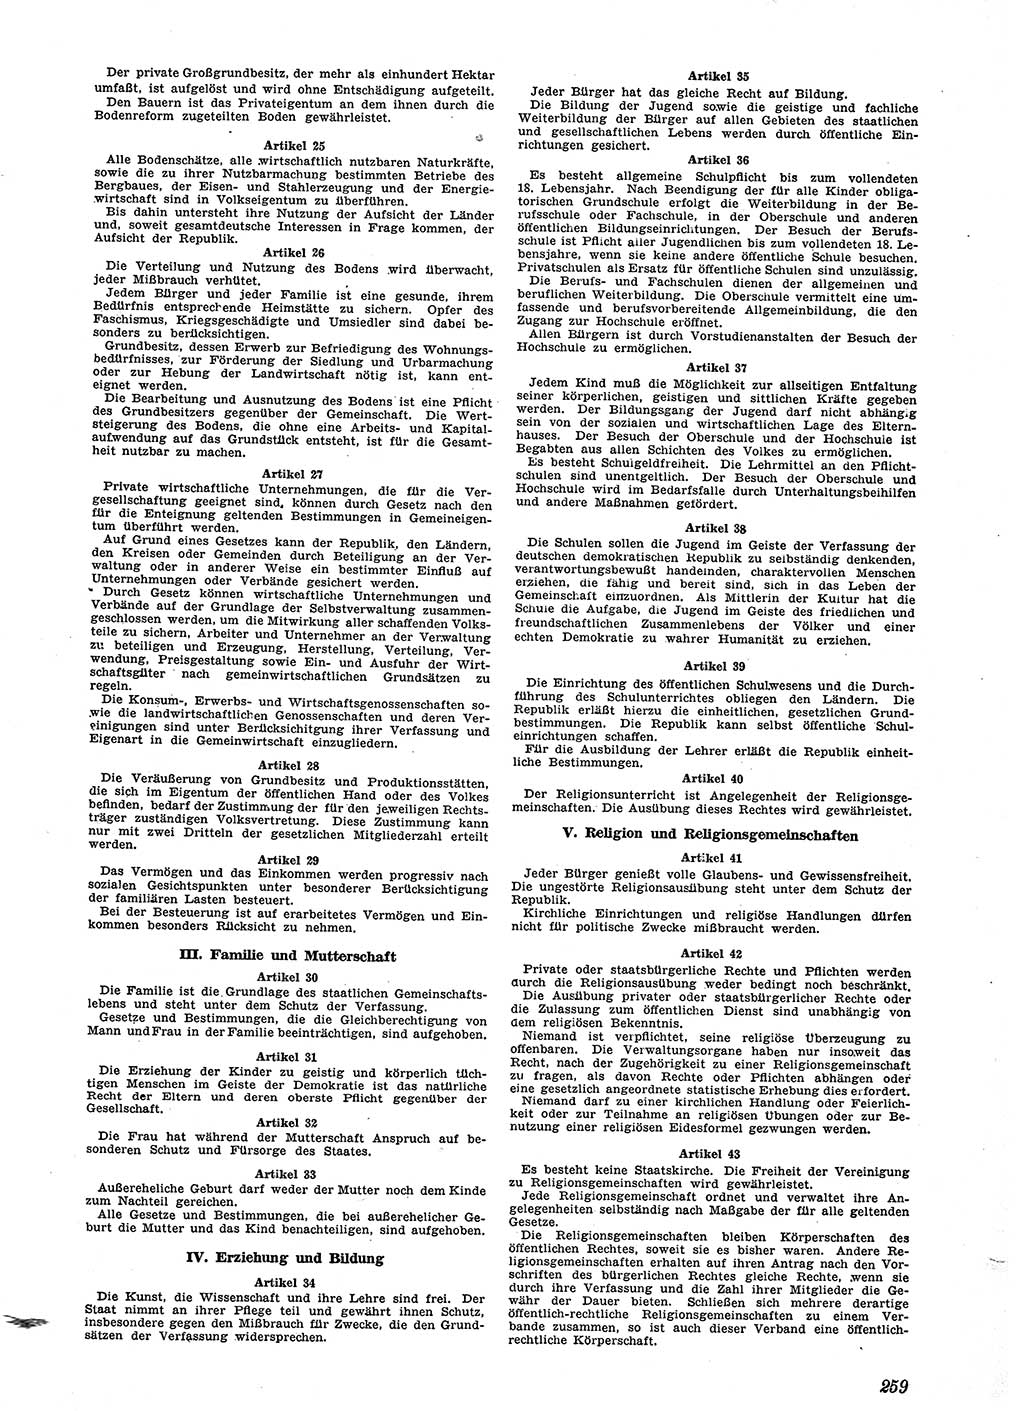 Neue Justiz (NJ), Zeitschrift für Recht und Rechtswissenschaft [Sowjetische Besatzungszone (SBZ) Deutschland], 2. Jahrgang 1948, Seite 259 (NJ SBZ Dtl. 1948, S. 259)